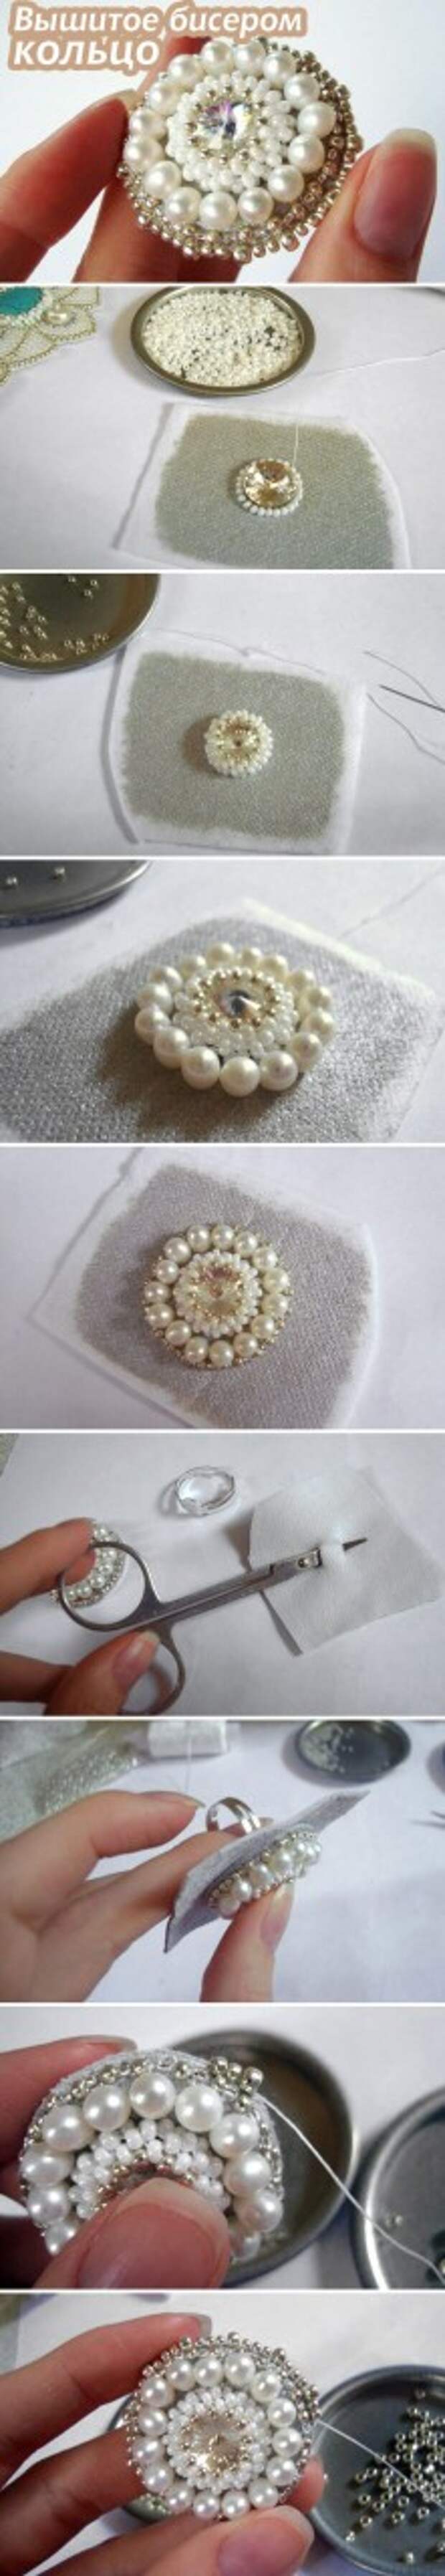 Мастер-класс: Вышитое бисером и жемчугом кольцо / Beaded Ring Tutorial #diy #bead #jewelry